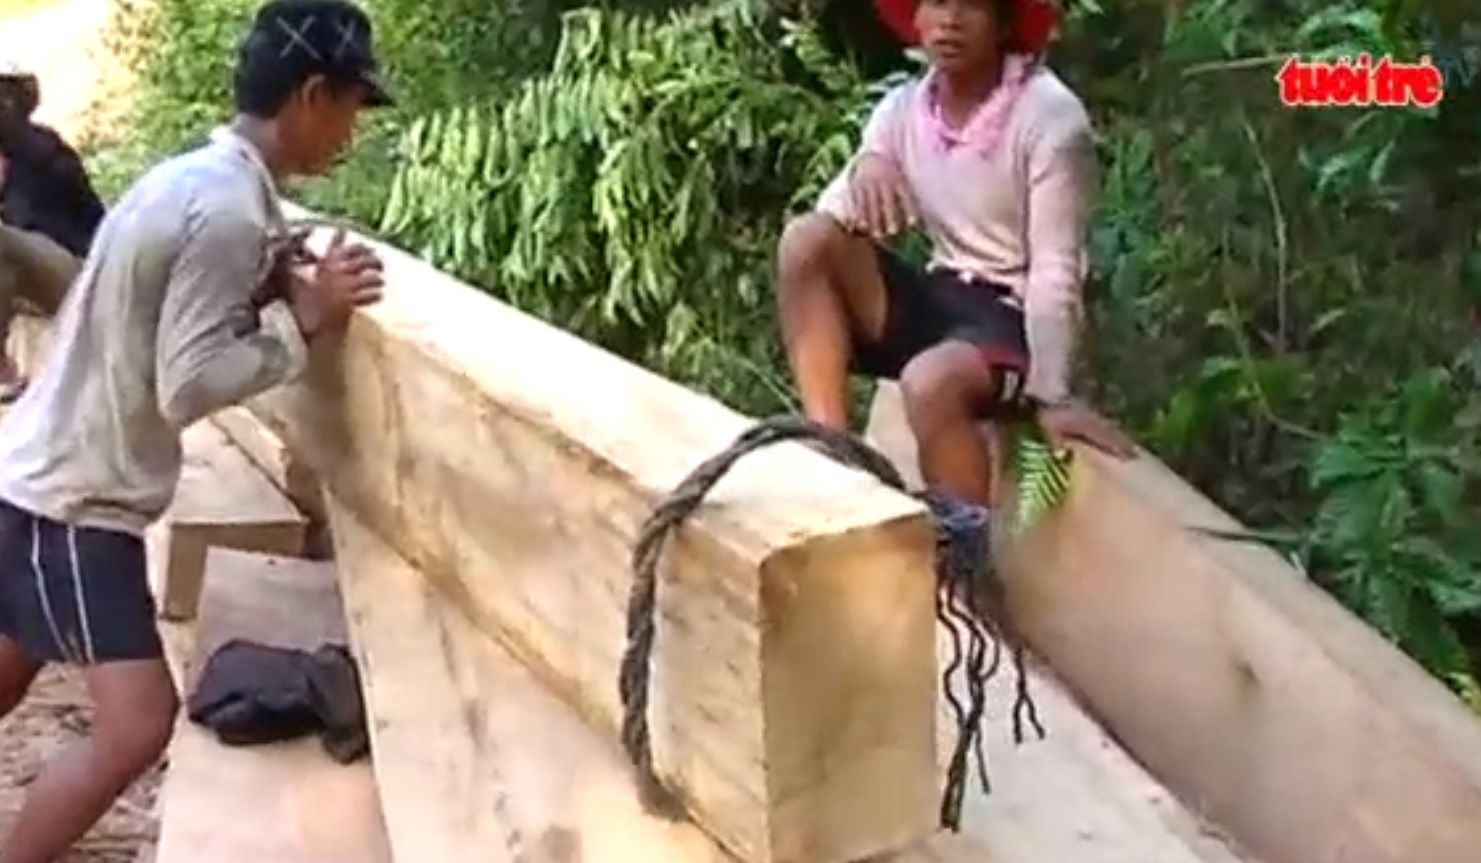 Numerous illegal logging cases detected in central Vietnam